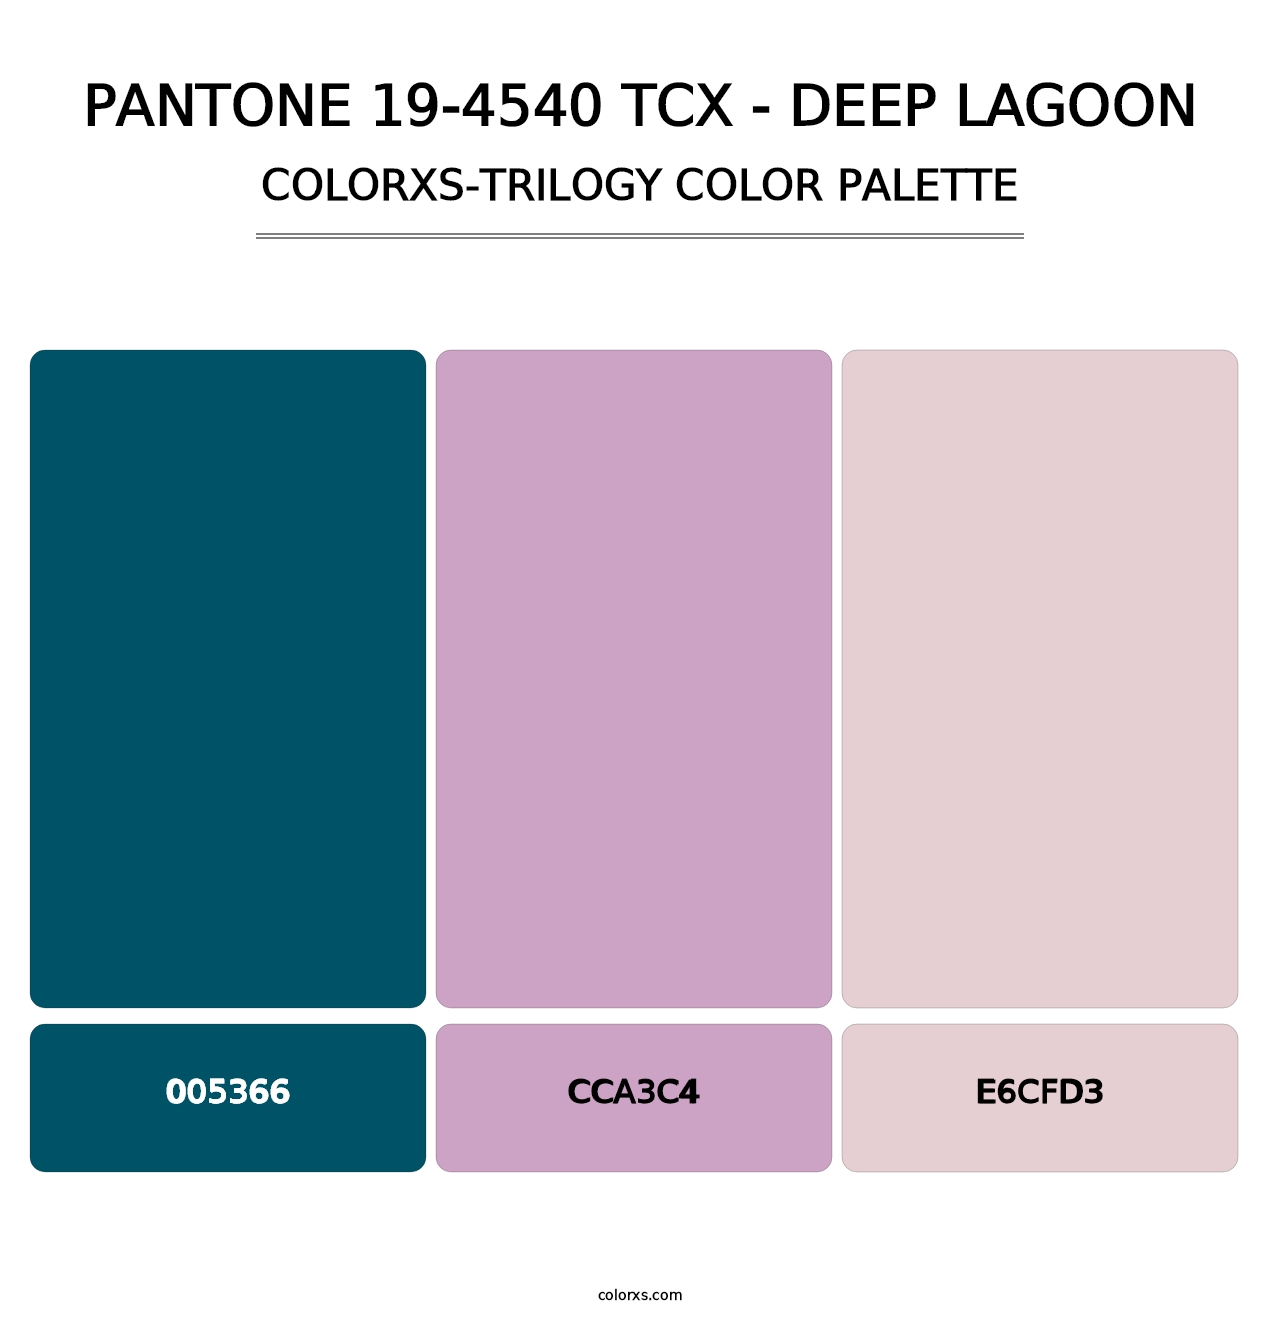 PANTONE 19-4540 TCX - Deep Lagoon - Colorxs Trilogy Palette